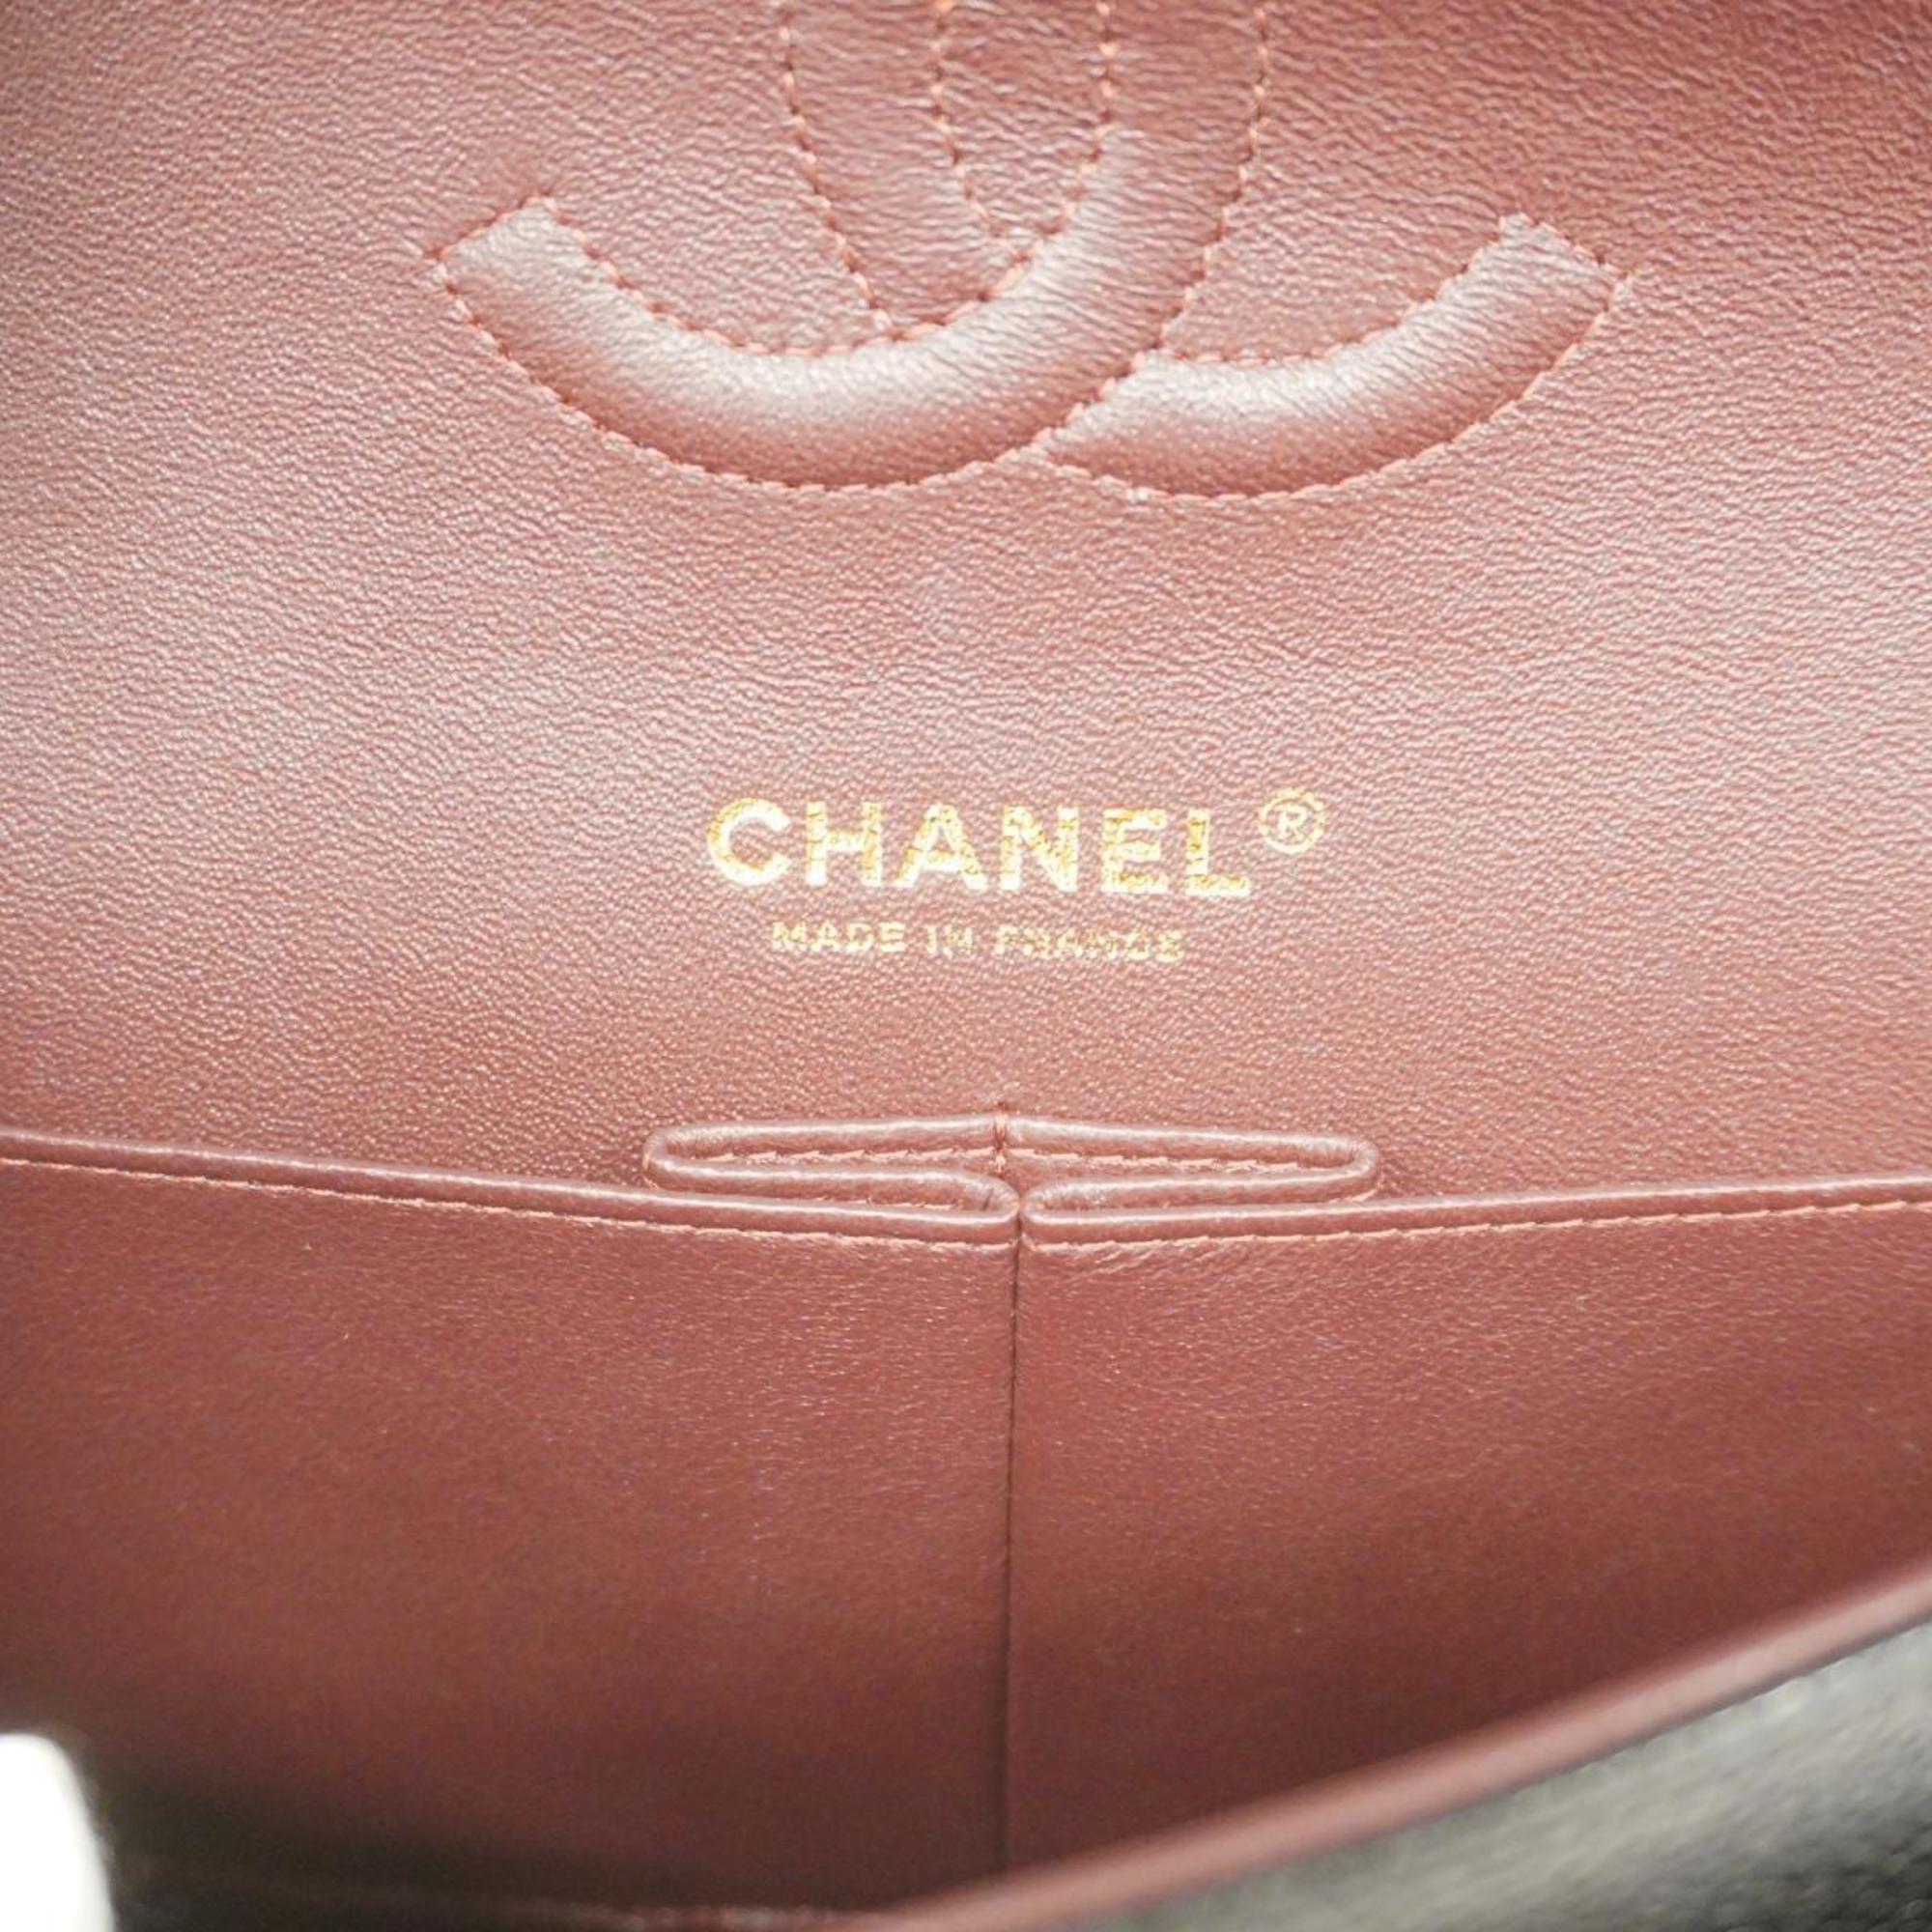 シャネル(Chanel) シャネル ショルダーバッグ マトラッセ Wフラップ Wチェーン キャビアスキン ブラック ゴールド金具  レディース